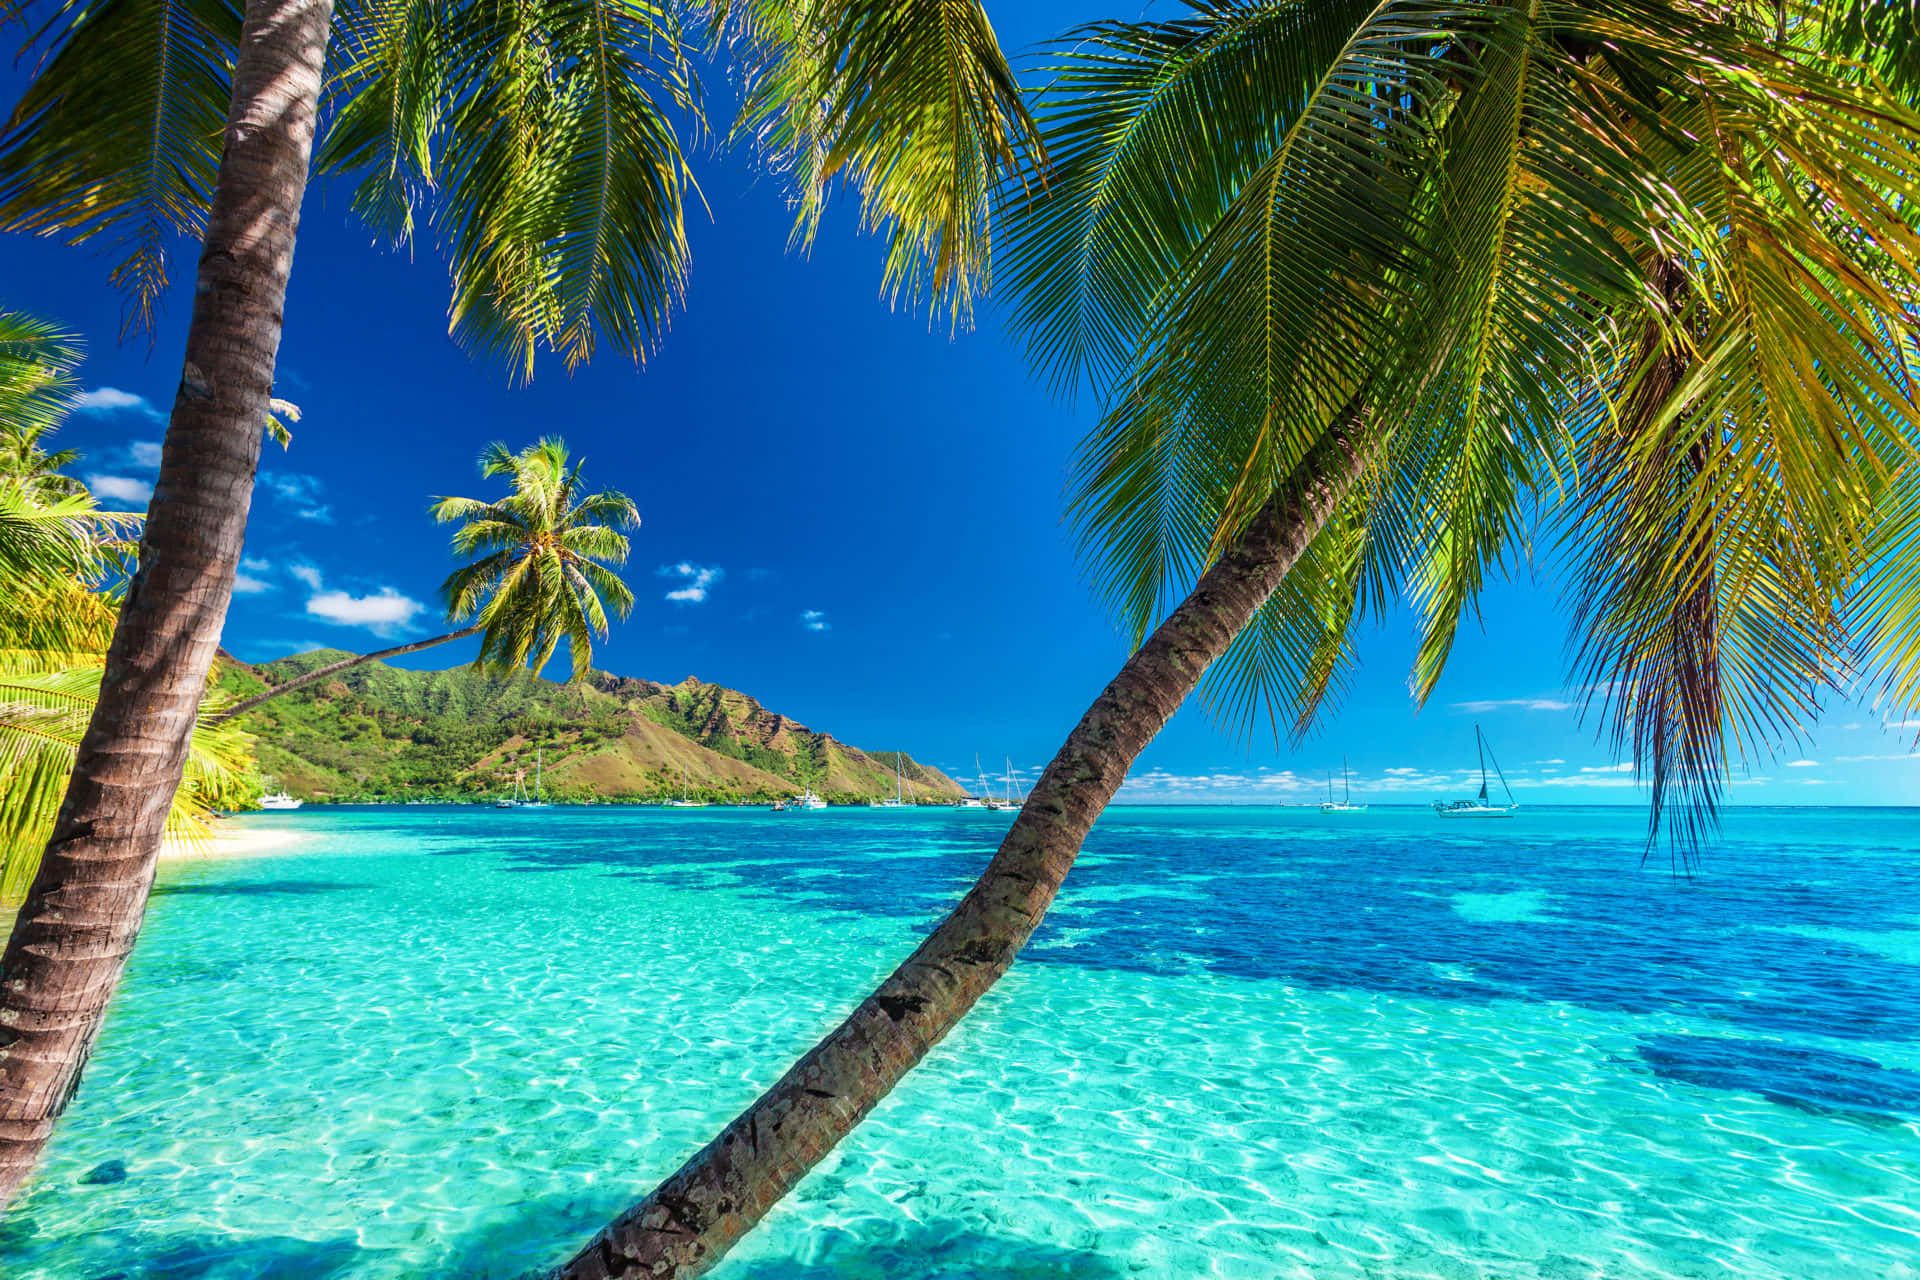 A perfect Caribbean beach escape